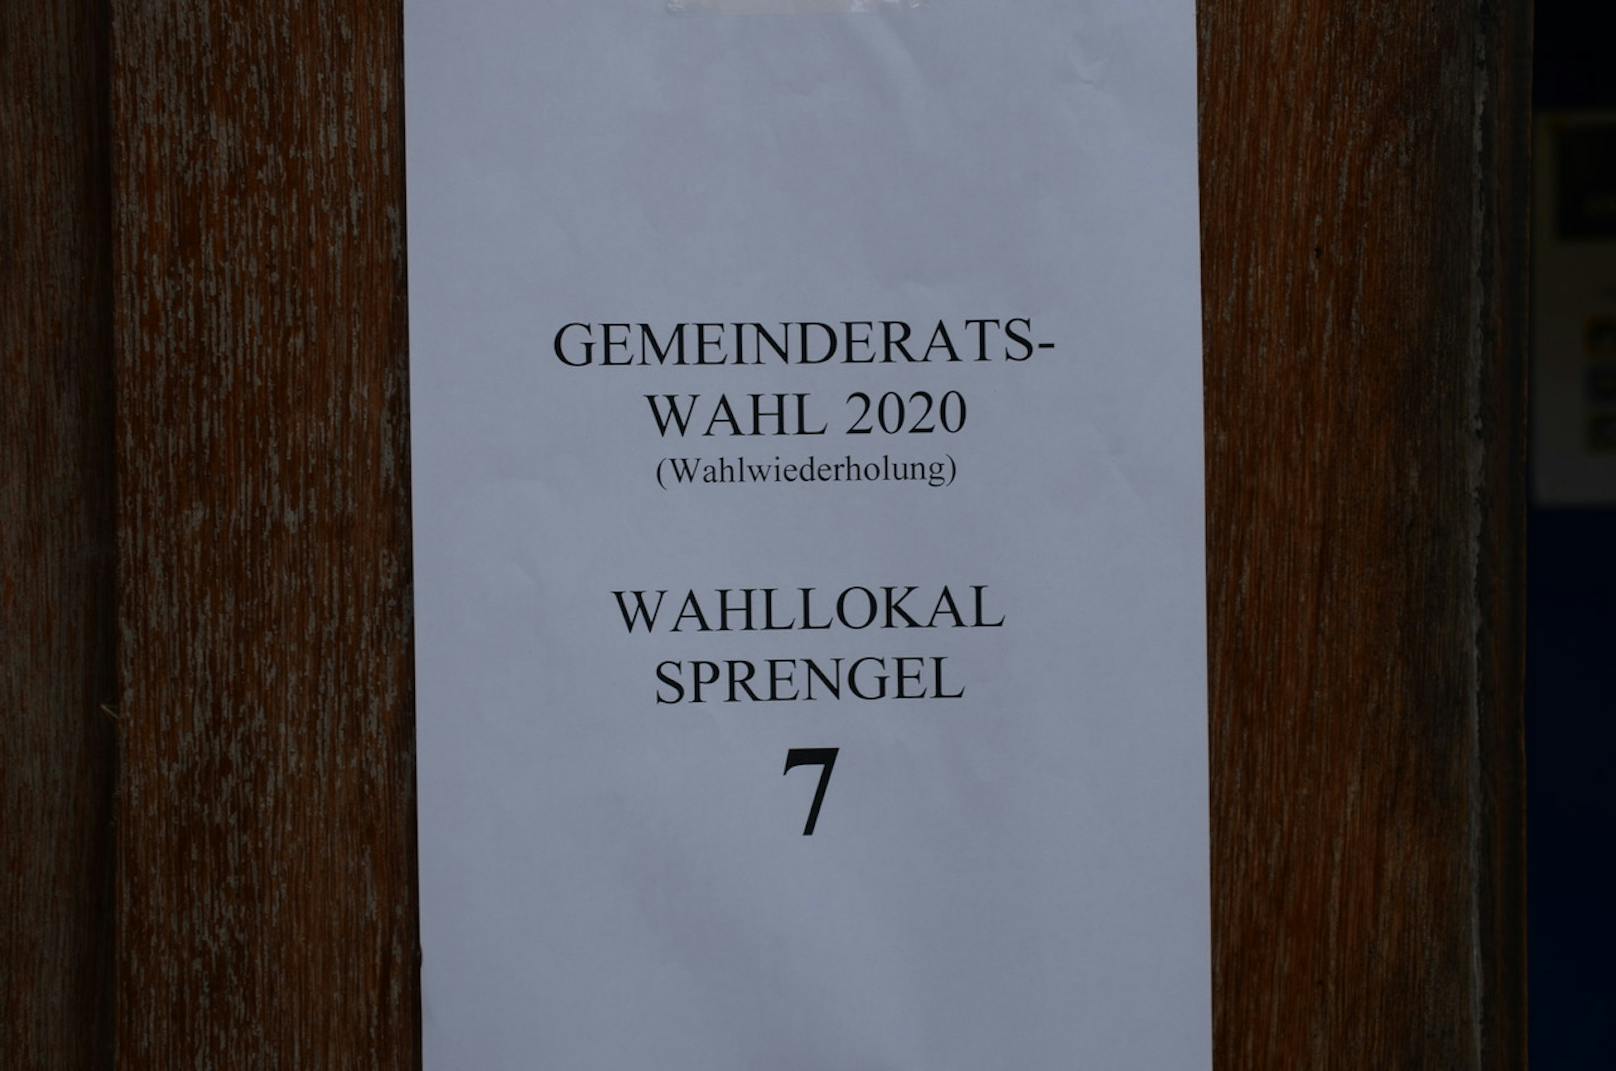 Gemeinderatswahl in vier Gemeinden in NÖ, hier der Wahlsprengel 7 in der Gemeinde Ebreichsdorf.